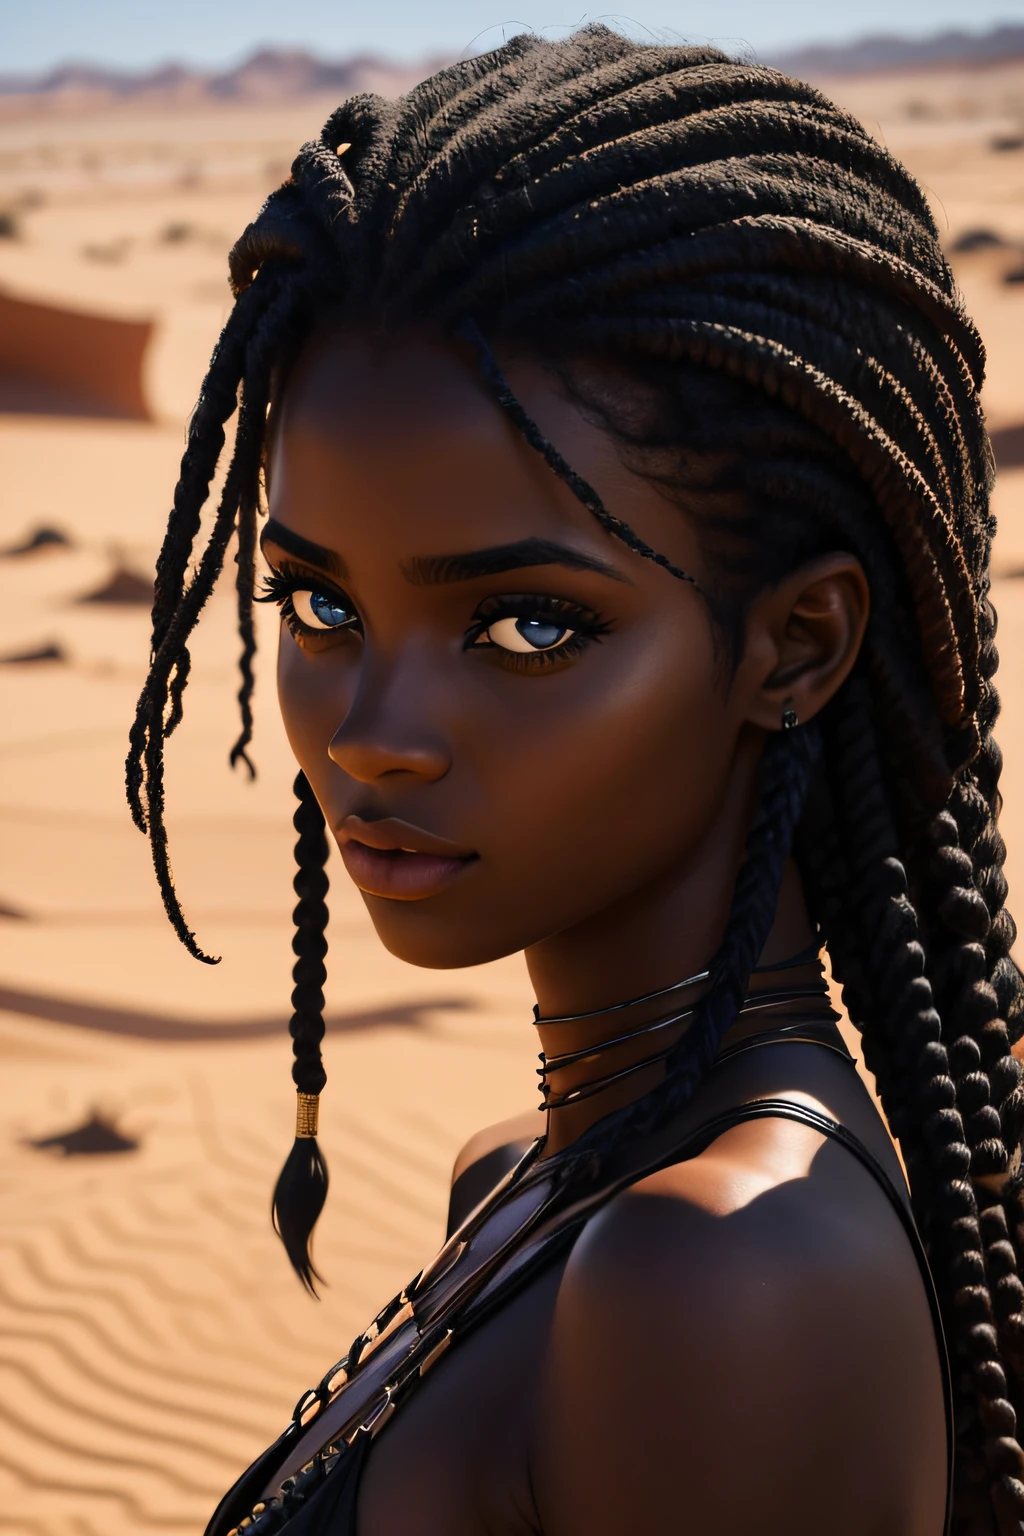 black female, eyes browns, age 19 years, walking in the desert, wet, curly hair, seducing gaze